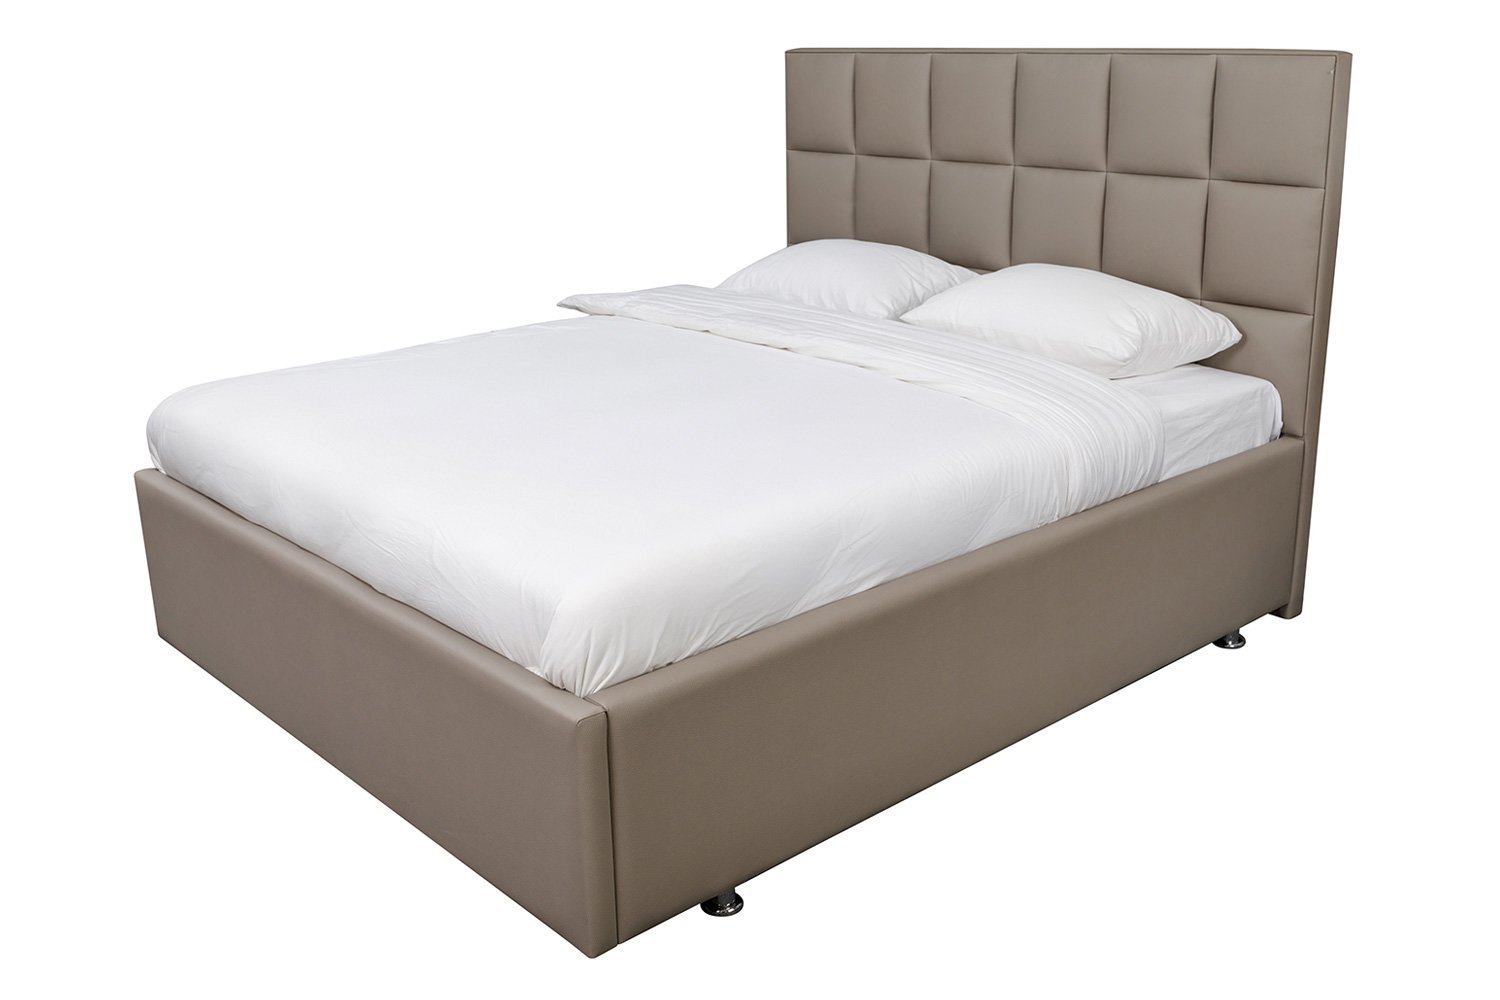 Кровать с подъёмным механизмом Тоскана